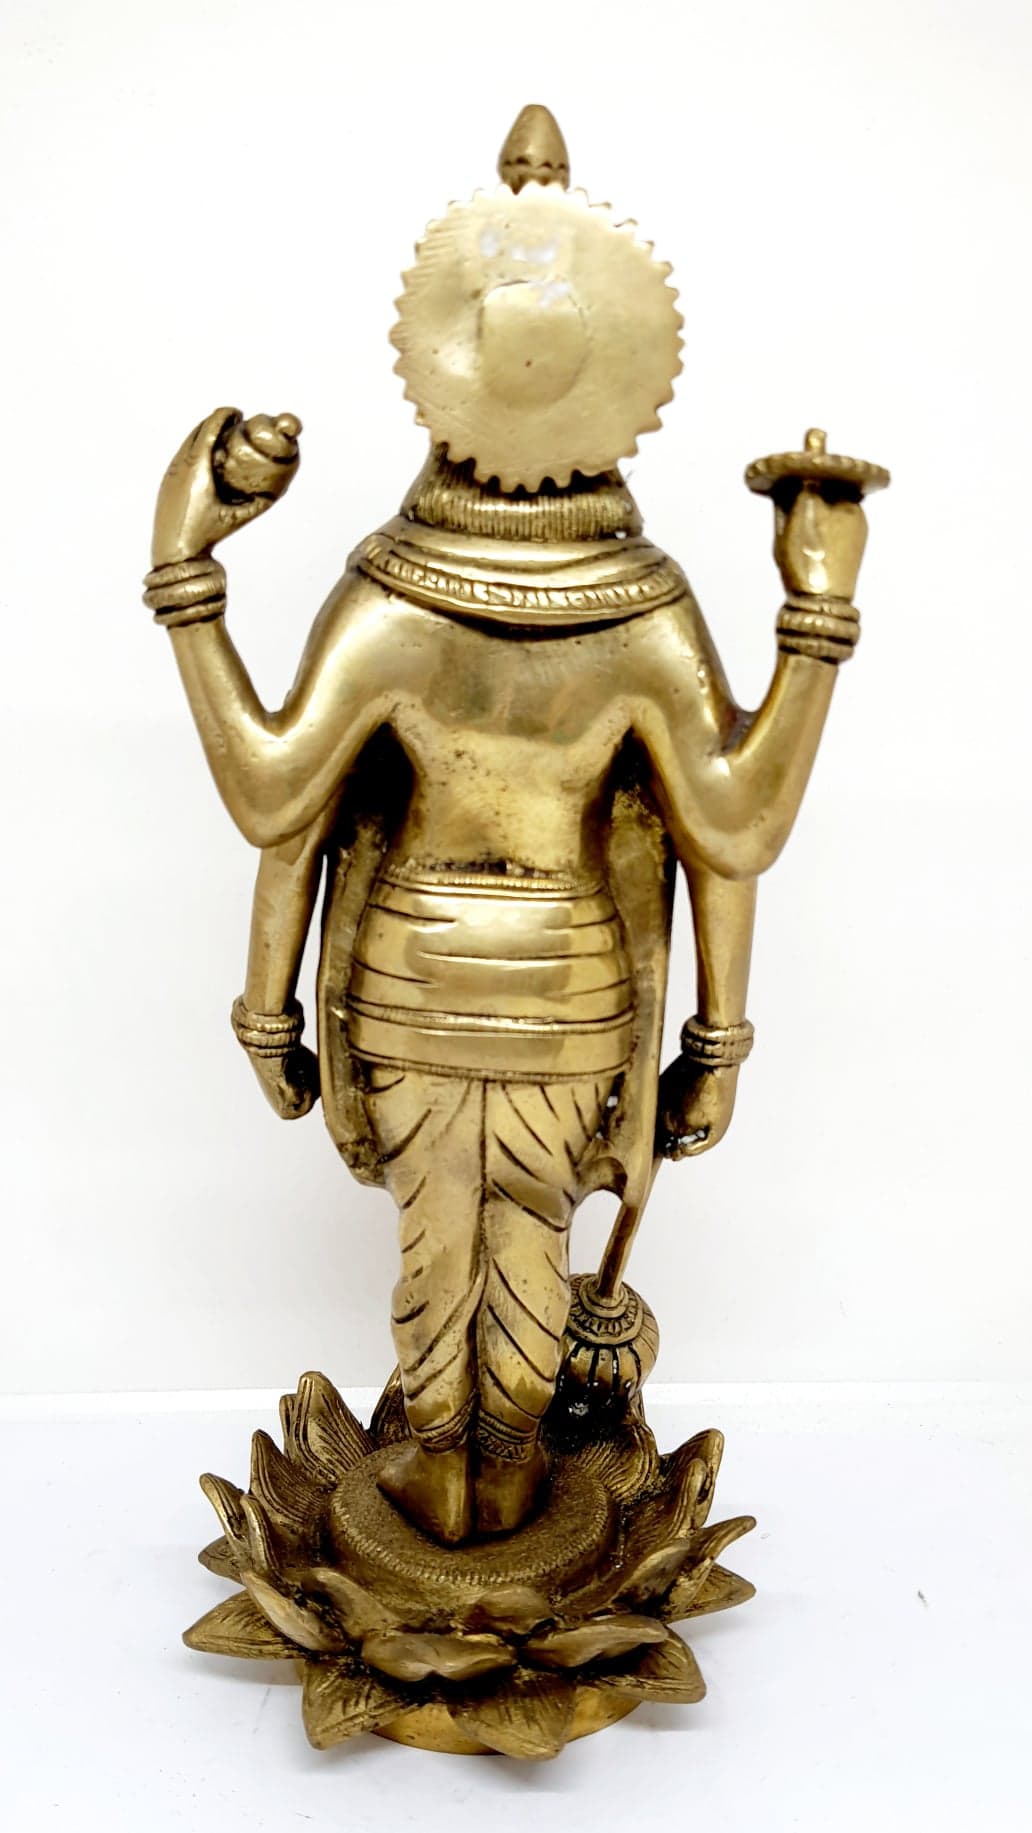 รูปภาพที่1 ของสินค้า : TP314 พระนารายณ์ยืนบนดอกบัว เนื้อทองเหลืองอินเดีย 